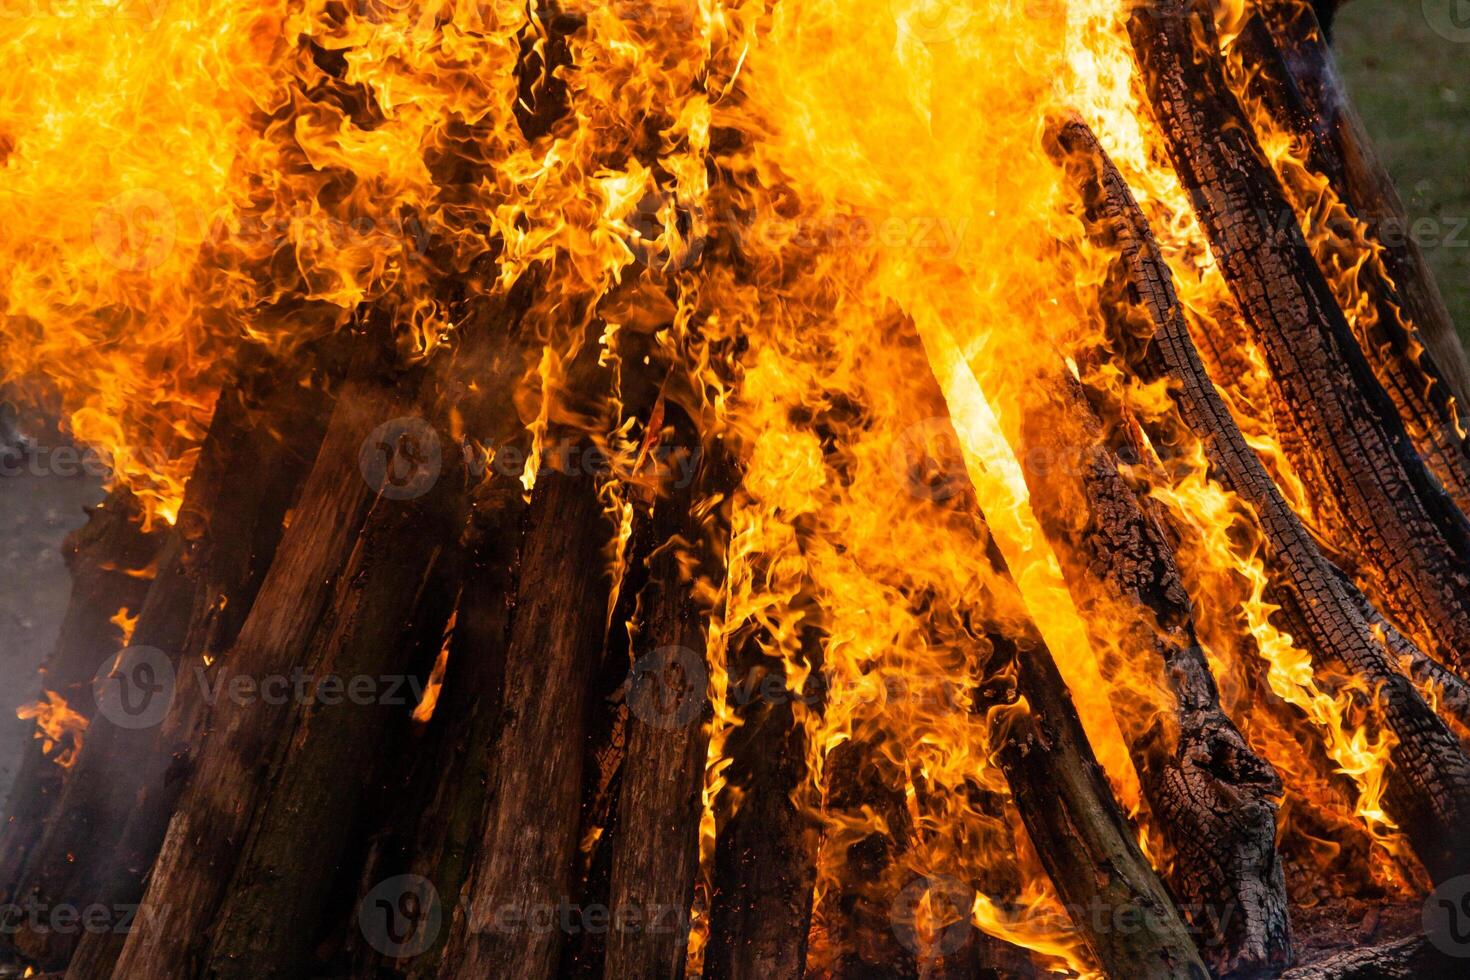 schön Feuer Flammen auf ein Lagerfeuer foto